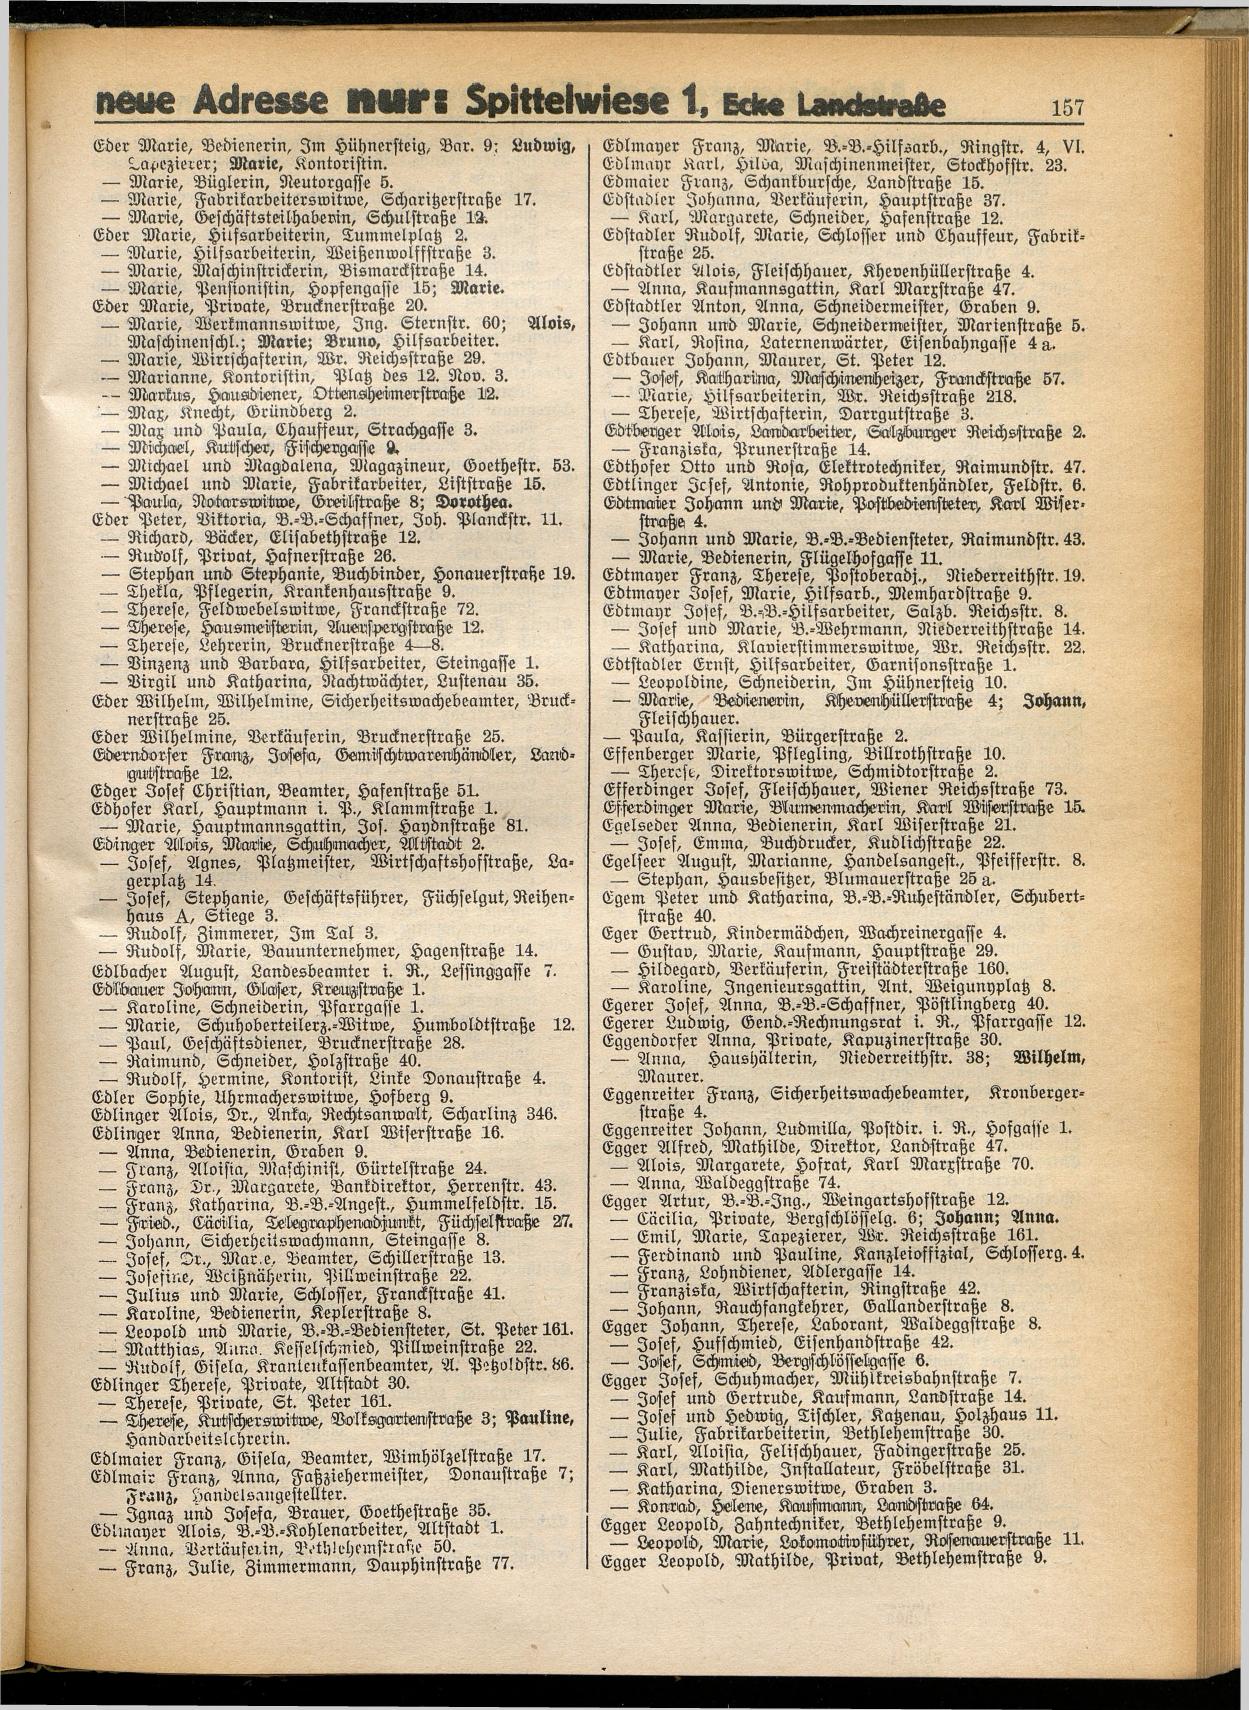 Amtliches Linzer Adreßbuch 1932 - Seite 167